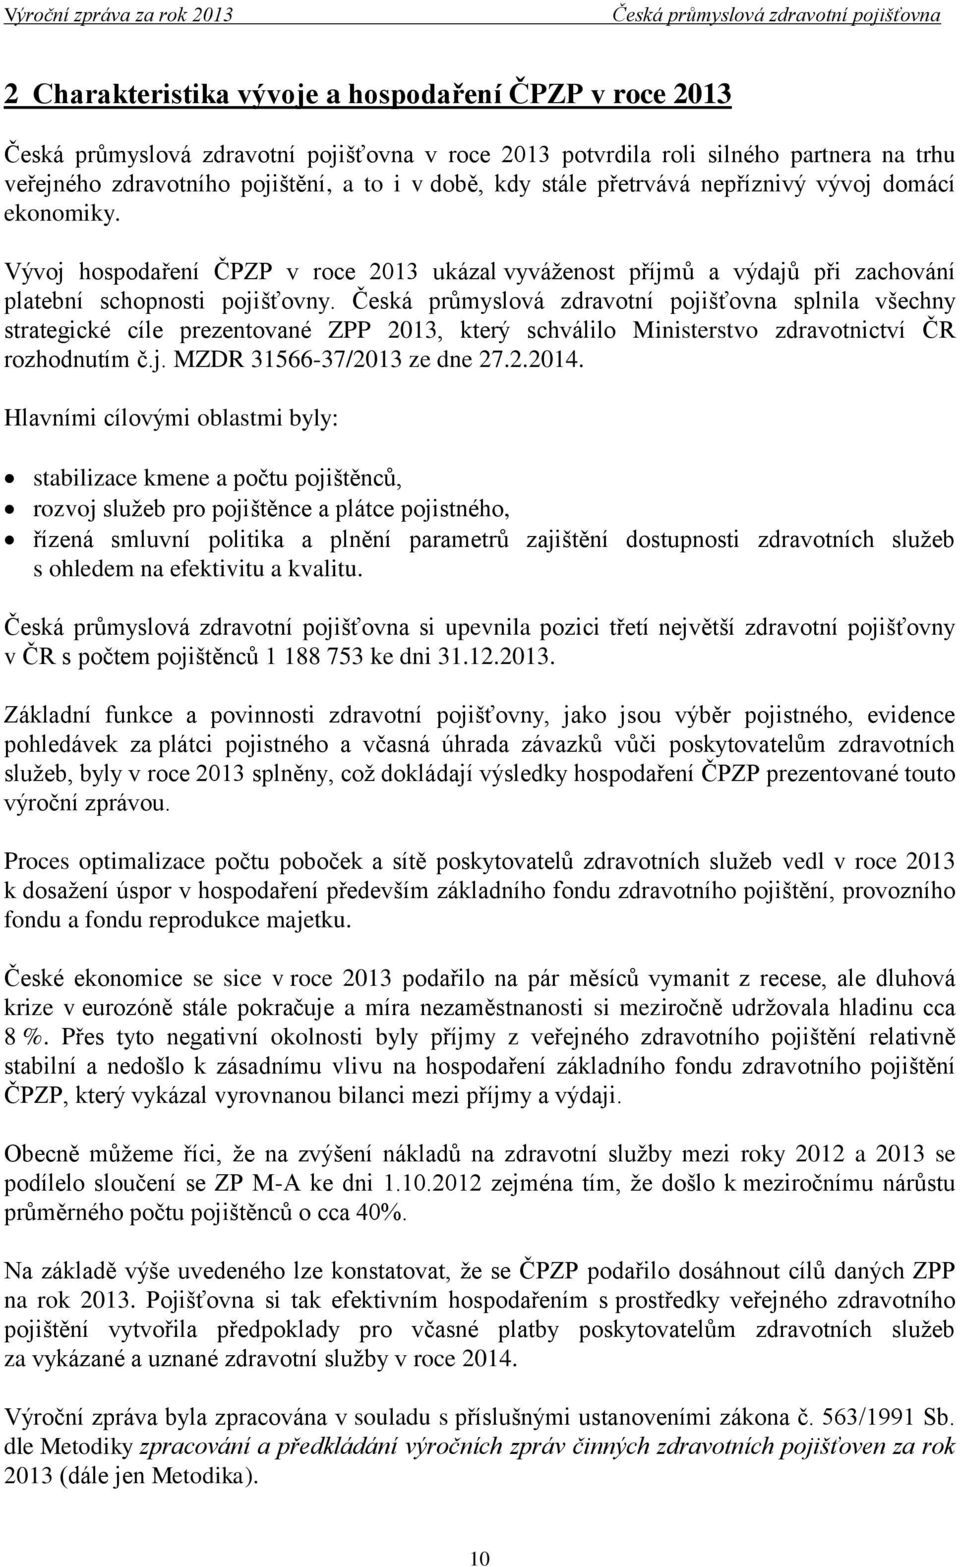 splnila všechny strategické cíle prezentované ZPP 2013, který schválilo Ministerstvo zdravotnictví ČR rozhodnutím č.j. MZDR 31566-37/2013 ze dne 27.2.2014.